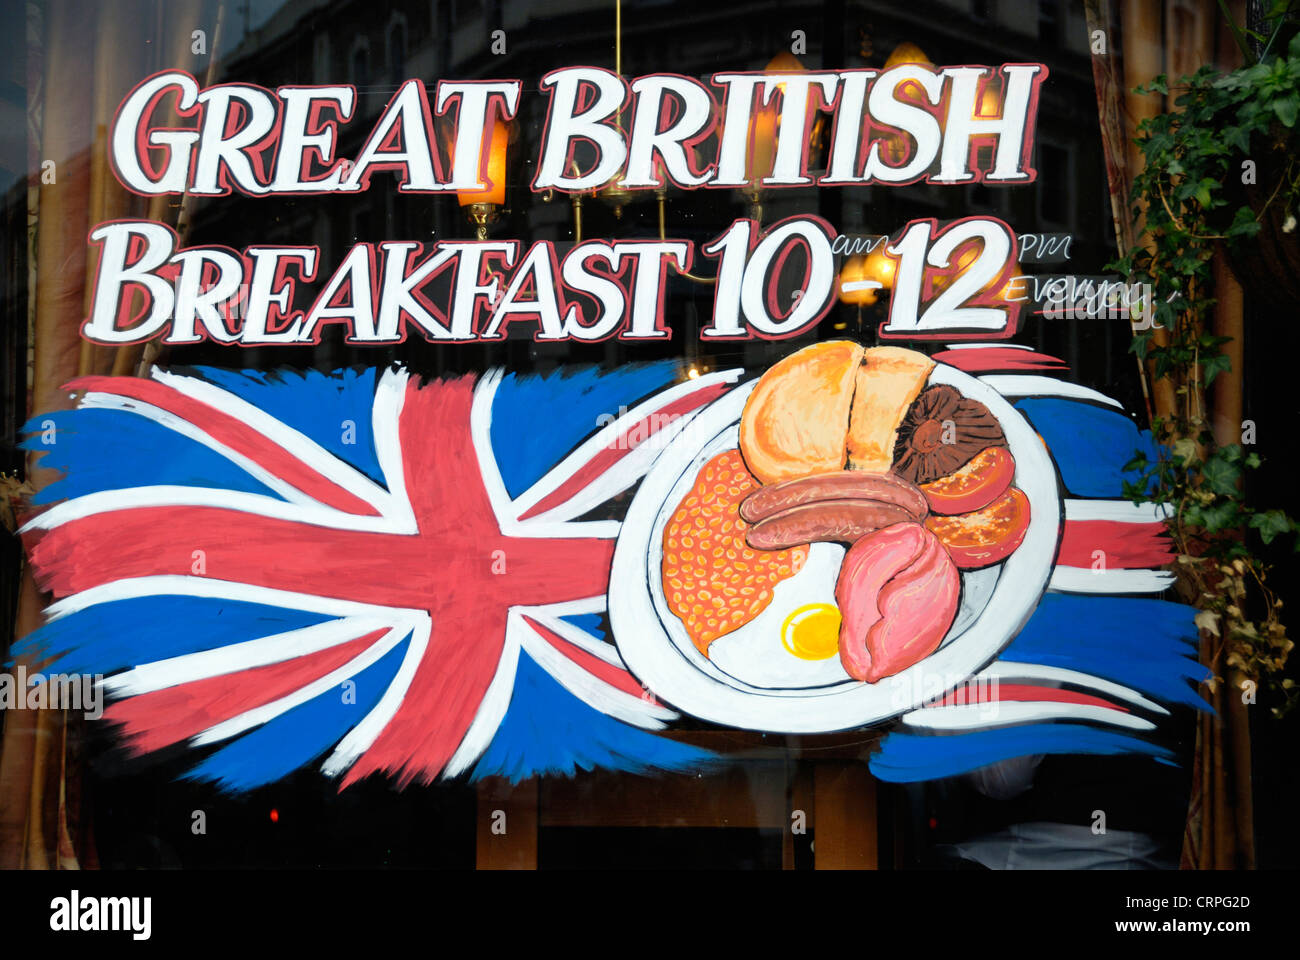 Inscrivez-vous dans la fenêtre d'une London pub publicité son offre d'un grand petit déjeuner anglais entre 10 et 12. Banque D'Images